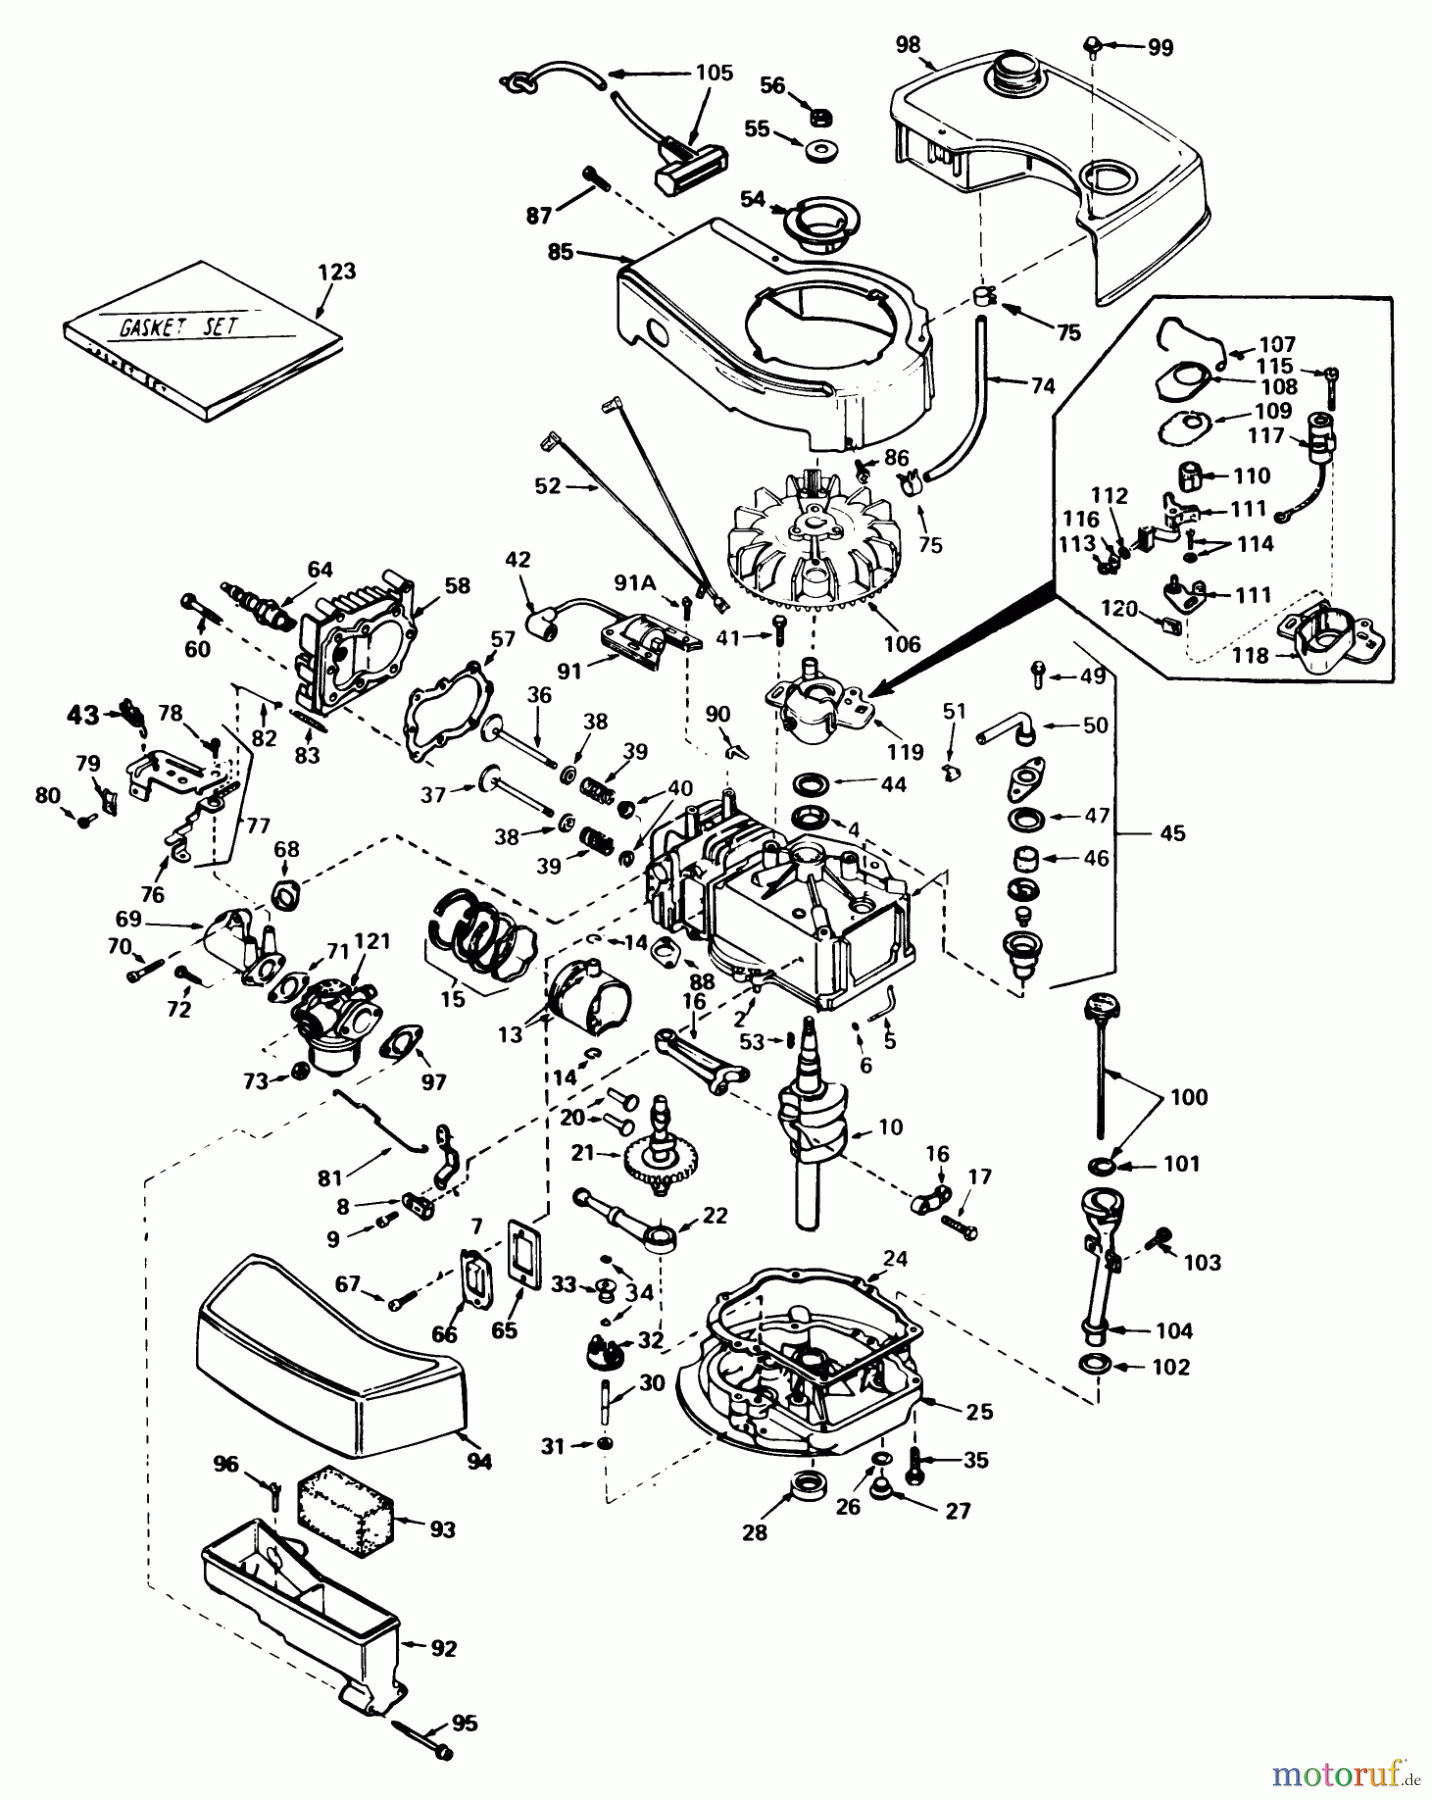  Toro Neu Mowers, Walk-Behind Seite 1 20790 - Toro Lawnmower, 1979 (9000001-9999999) ENGINE TECUMSEH MODEL NO. TNT 100-10061C